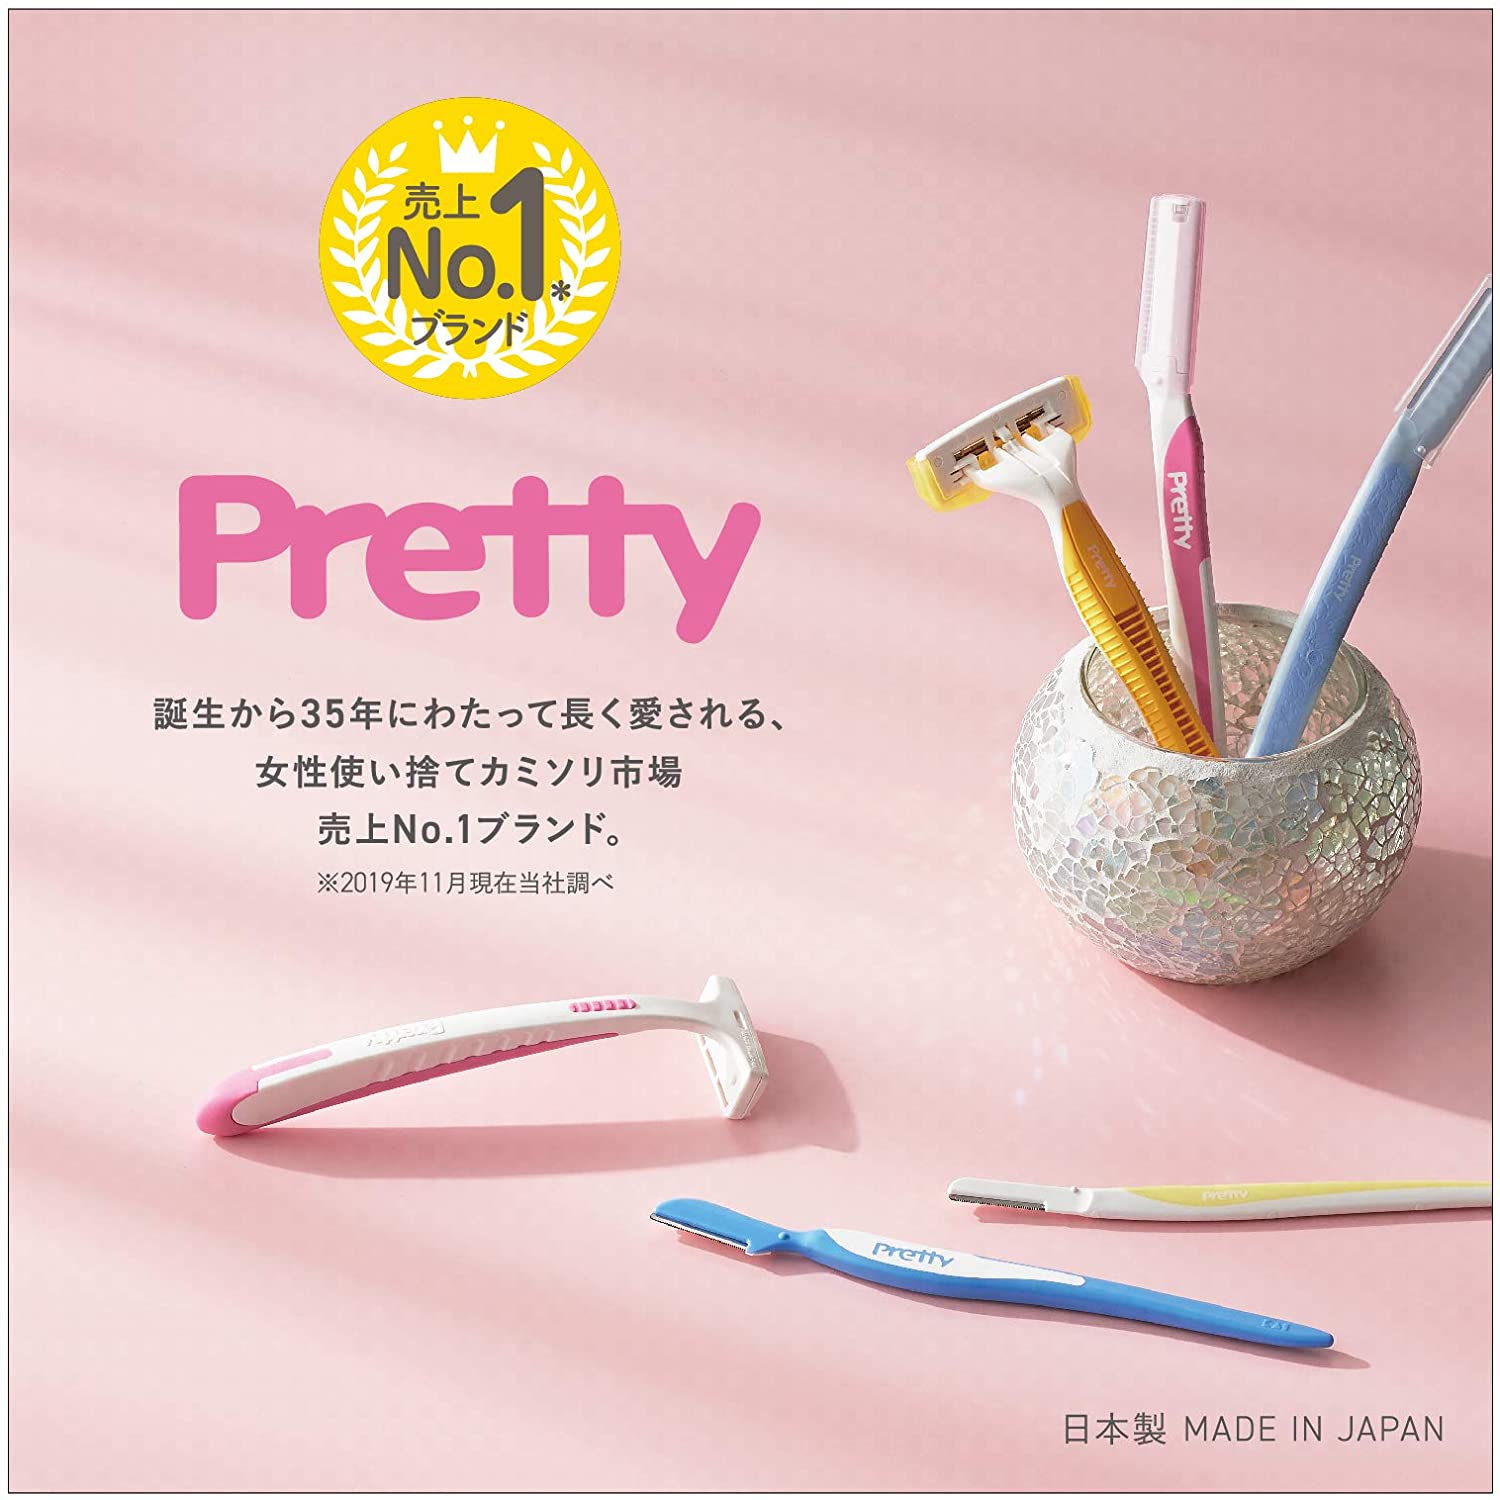 Set 06 dao tỉa lông mày dành cho nữ Kai Pretty size XL, kích thước sản phẩm nhỏ gọn, giúp mọi người sử dụng dễ dàng, có thể mang theo bên mình - nội địa Nhật Bản